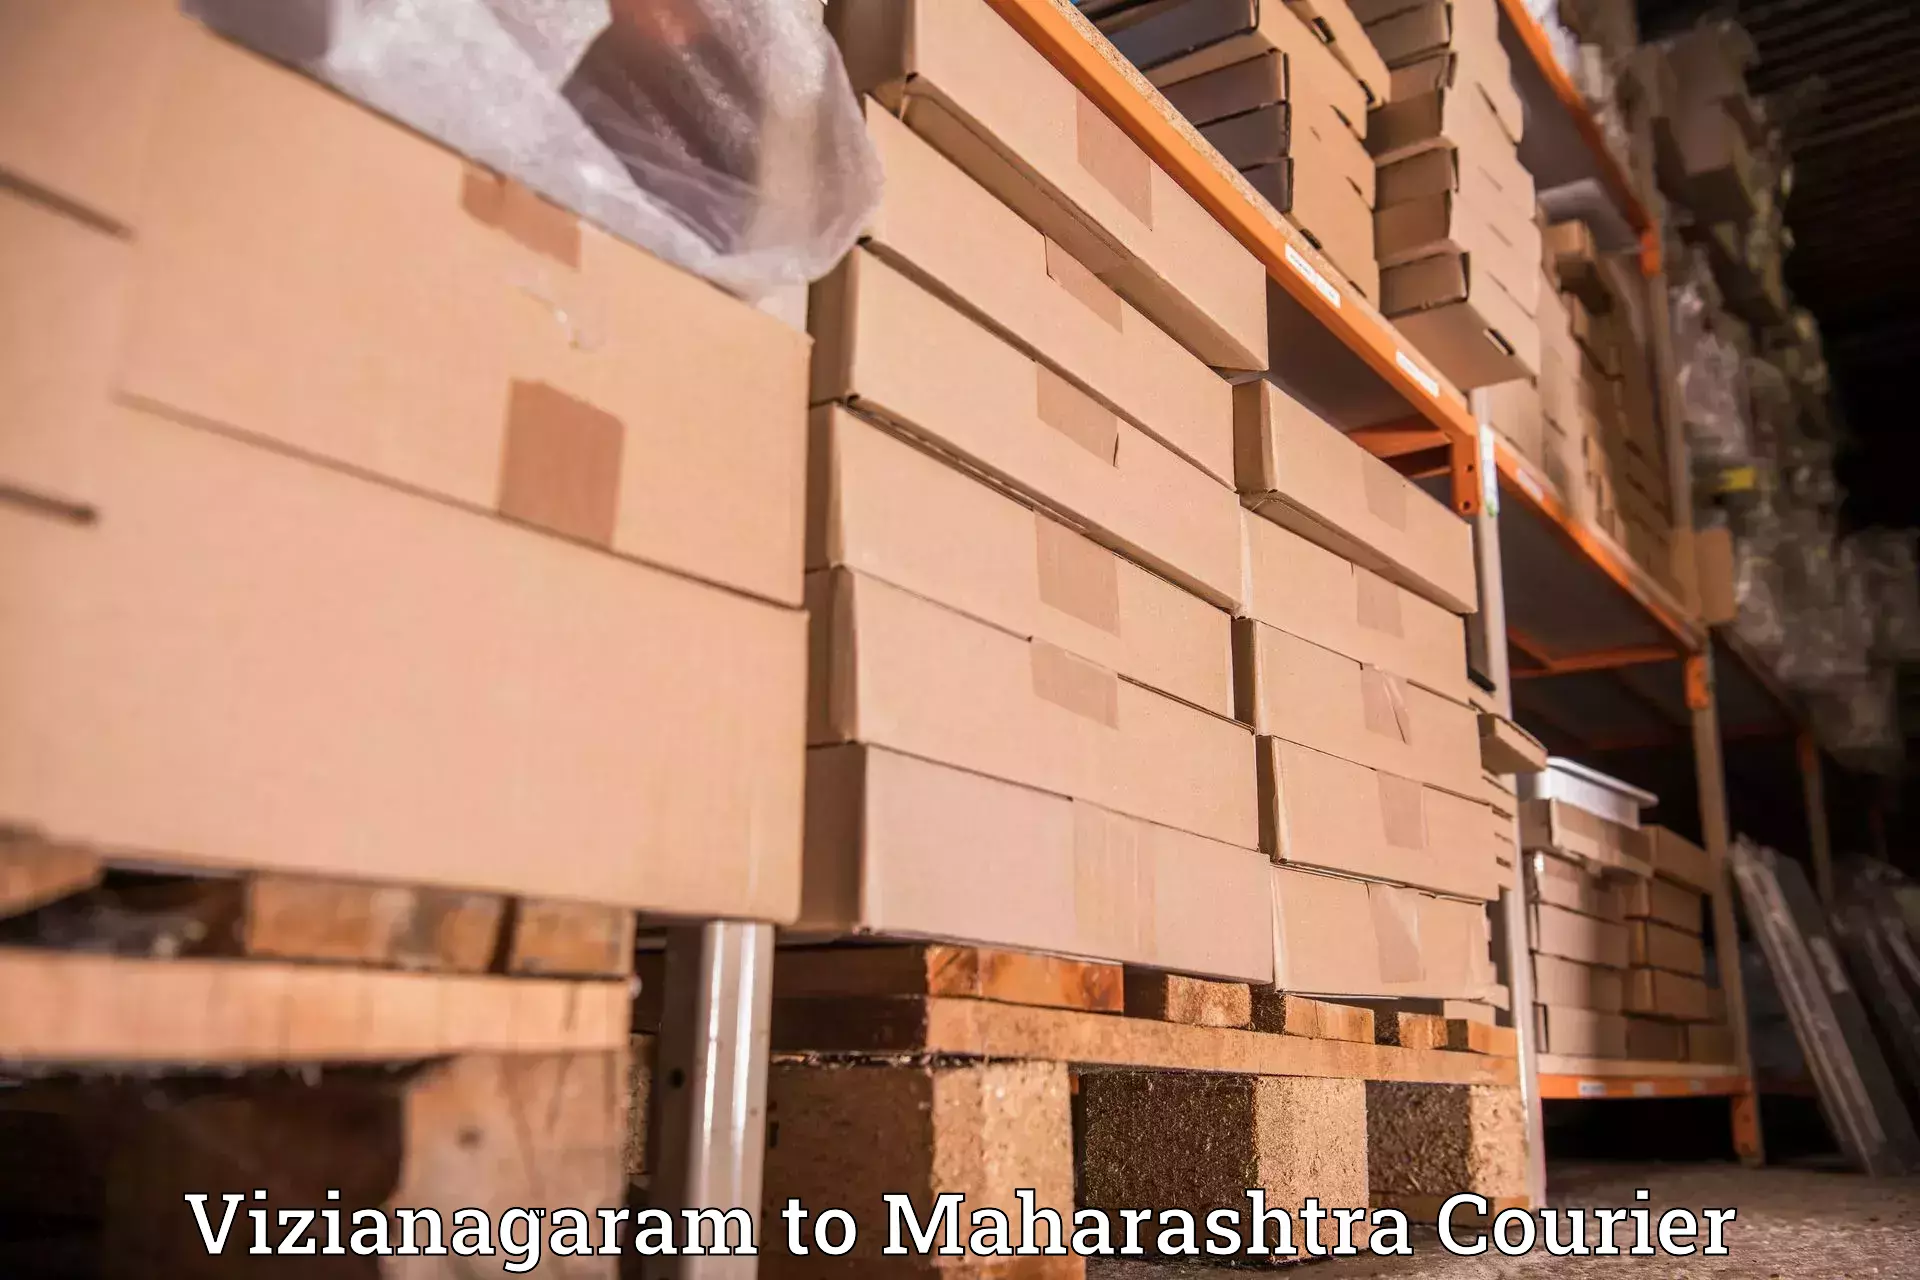 Courier service partnerships Vizianagaram to Raigarh Maharashtra